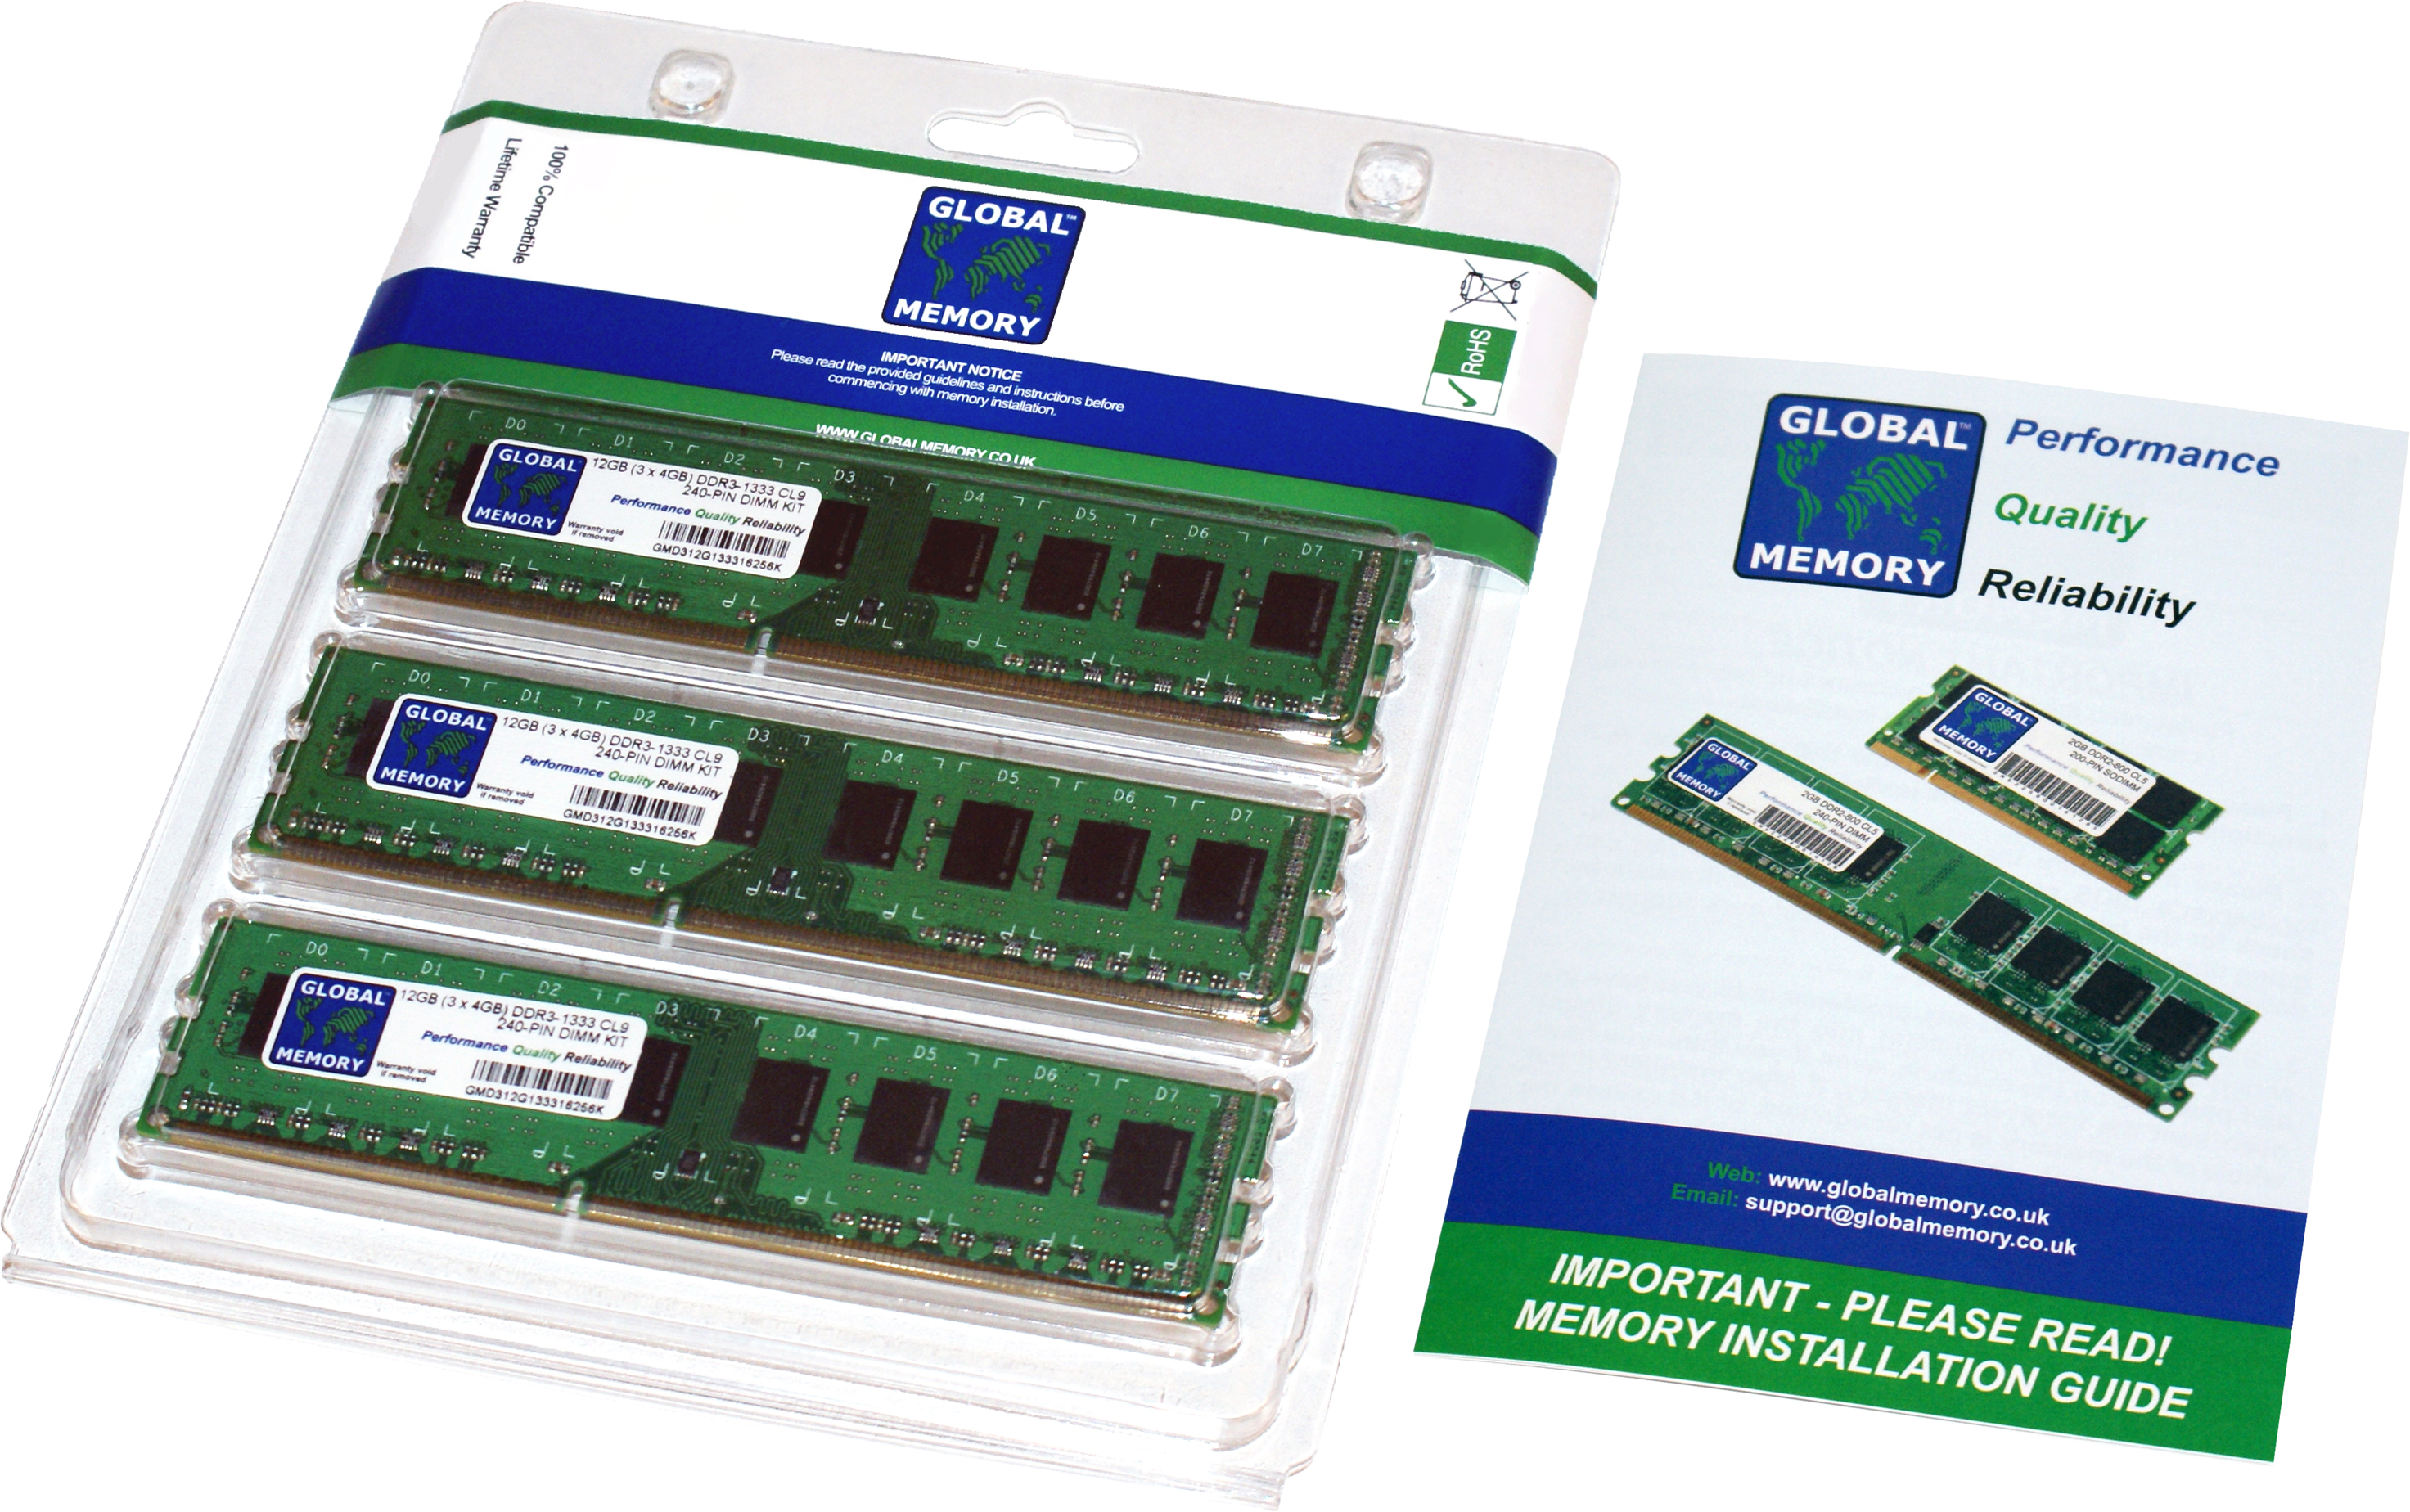 24GB (3 x 8GB) DDR3 1866MHz PC3-14900 240-PIN DIMM MEMORY RAM KIT FOR HEWLETT-PACKARD DESKTOPS